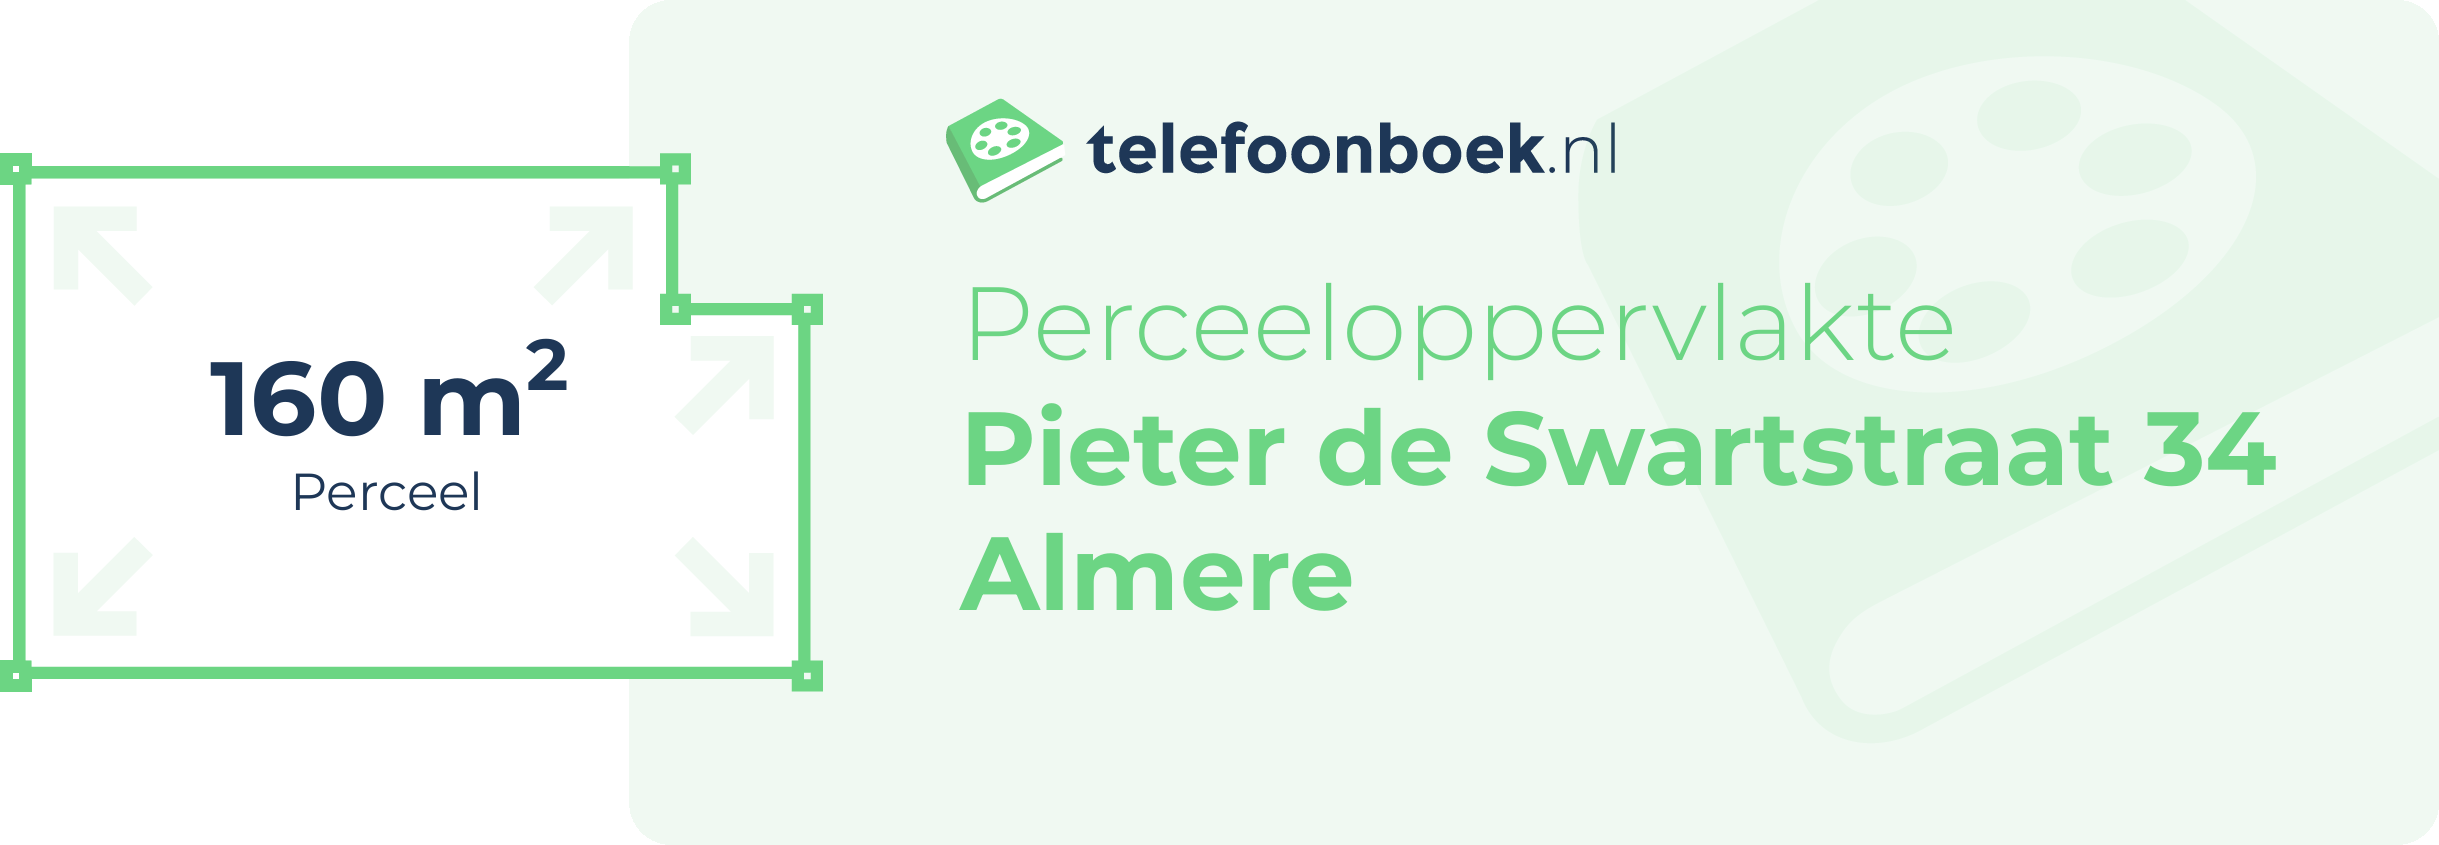 Perceeloppervlakte Pieter De Swartstraat 34 Almere